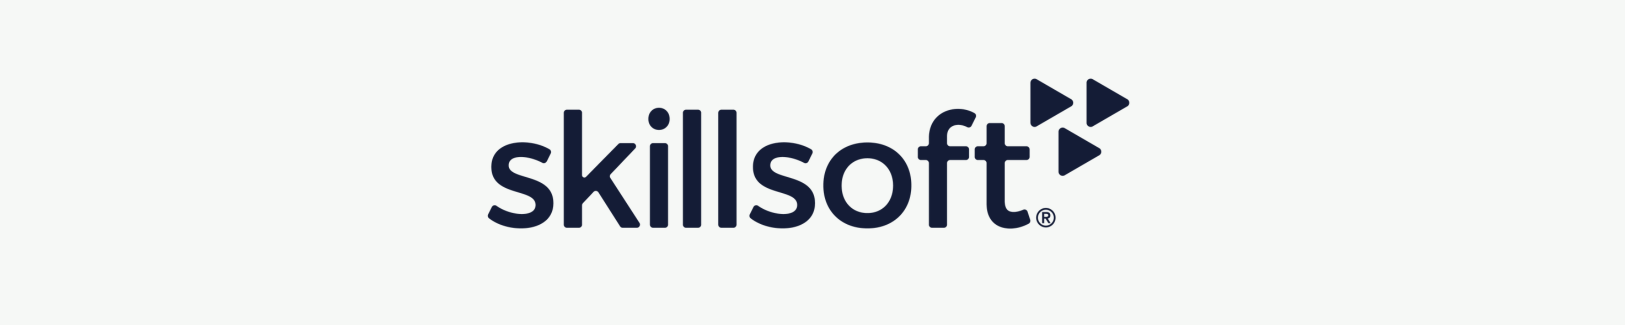 Skillsoft Logo Banner